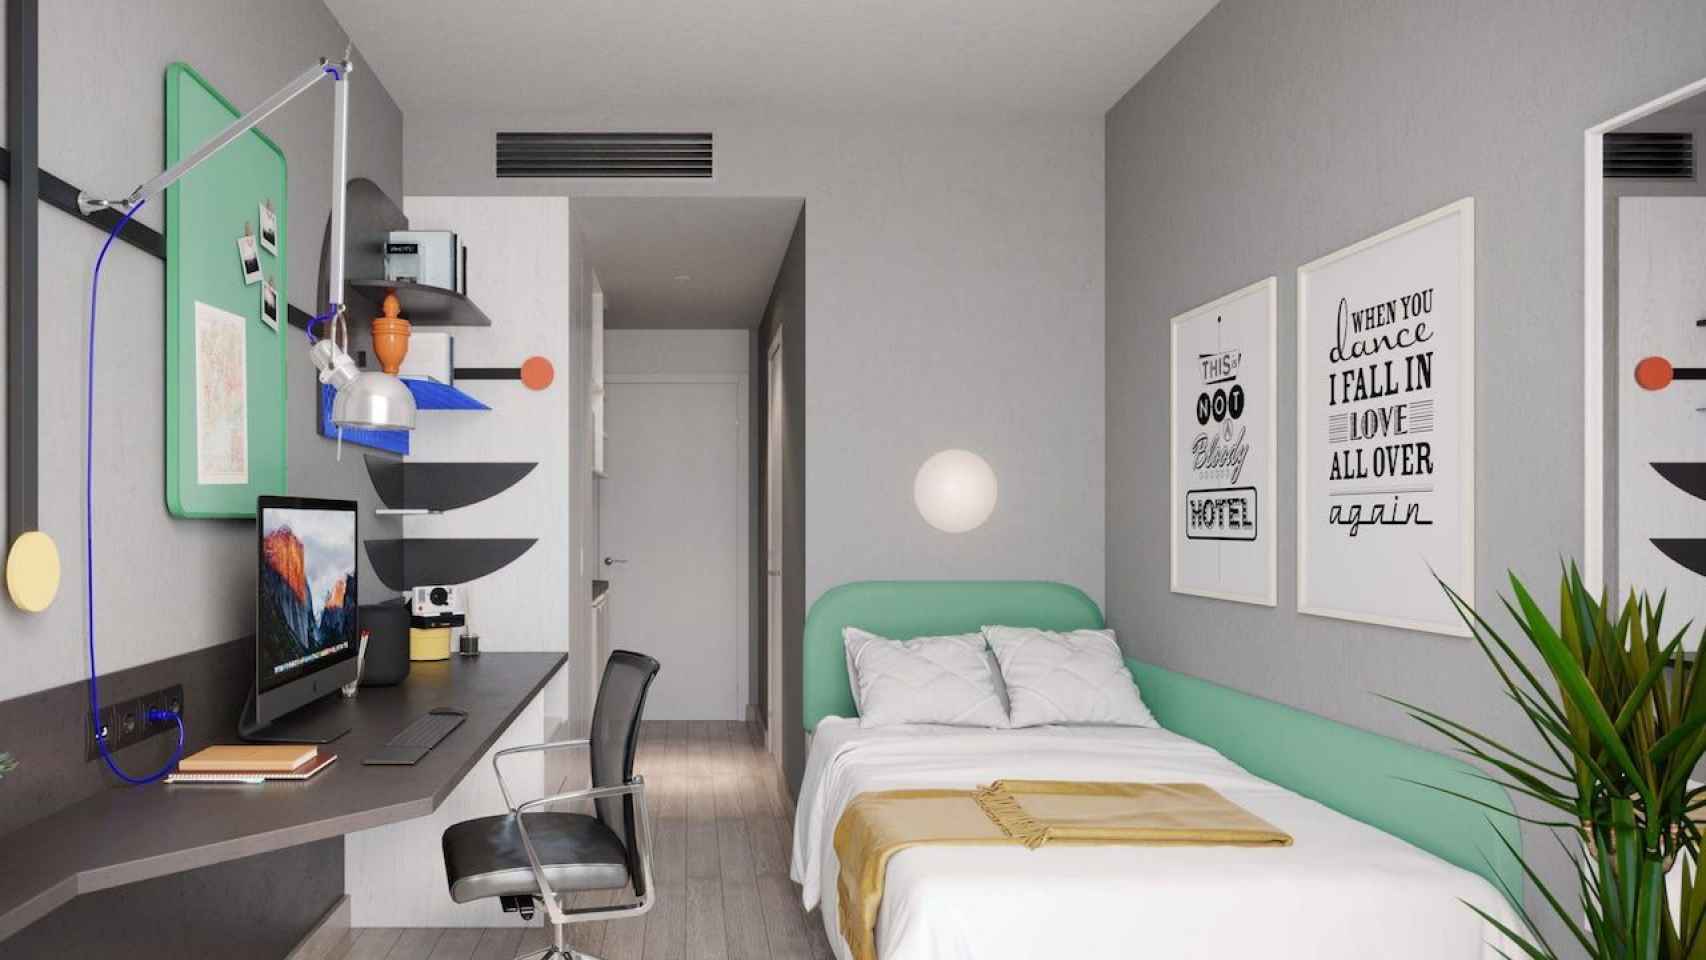 Imagen de la habitación básica de la residencia Aleu, que cuesta 1.300 euros / RESIDENCIA ALEU